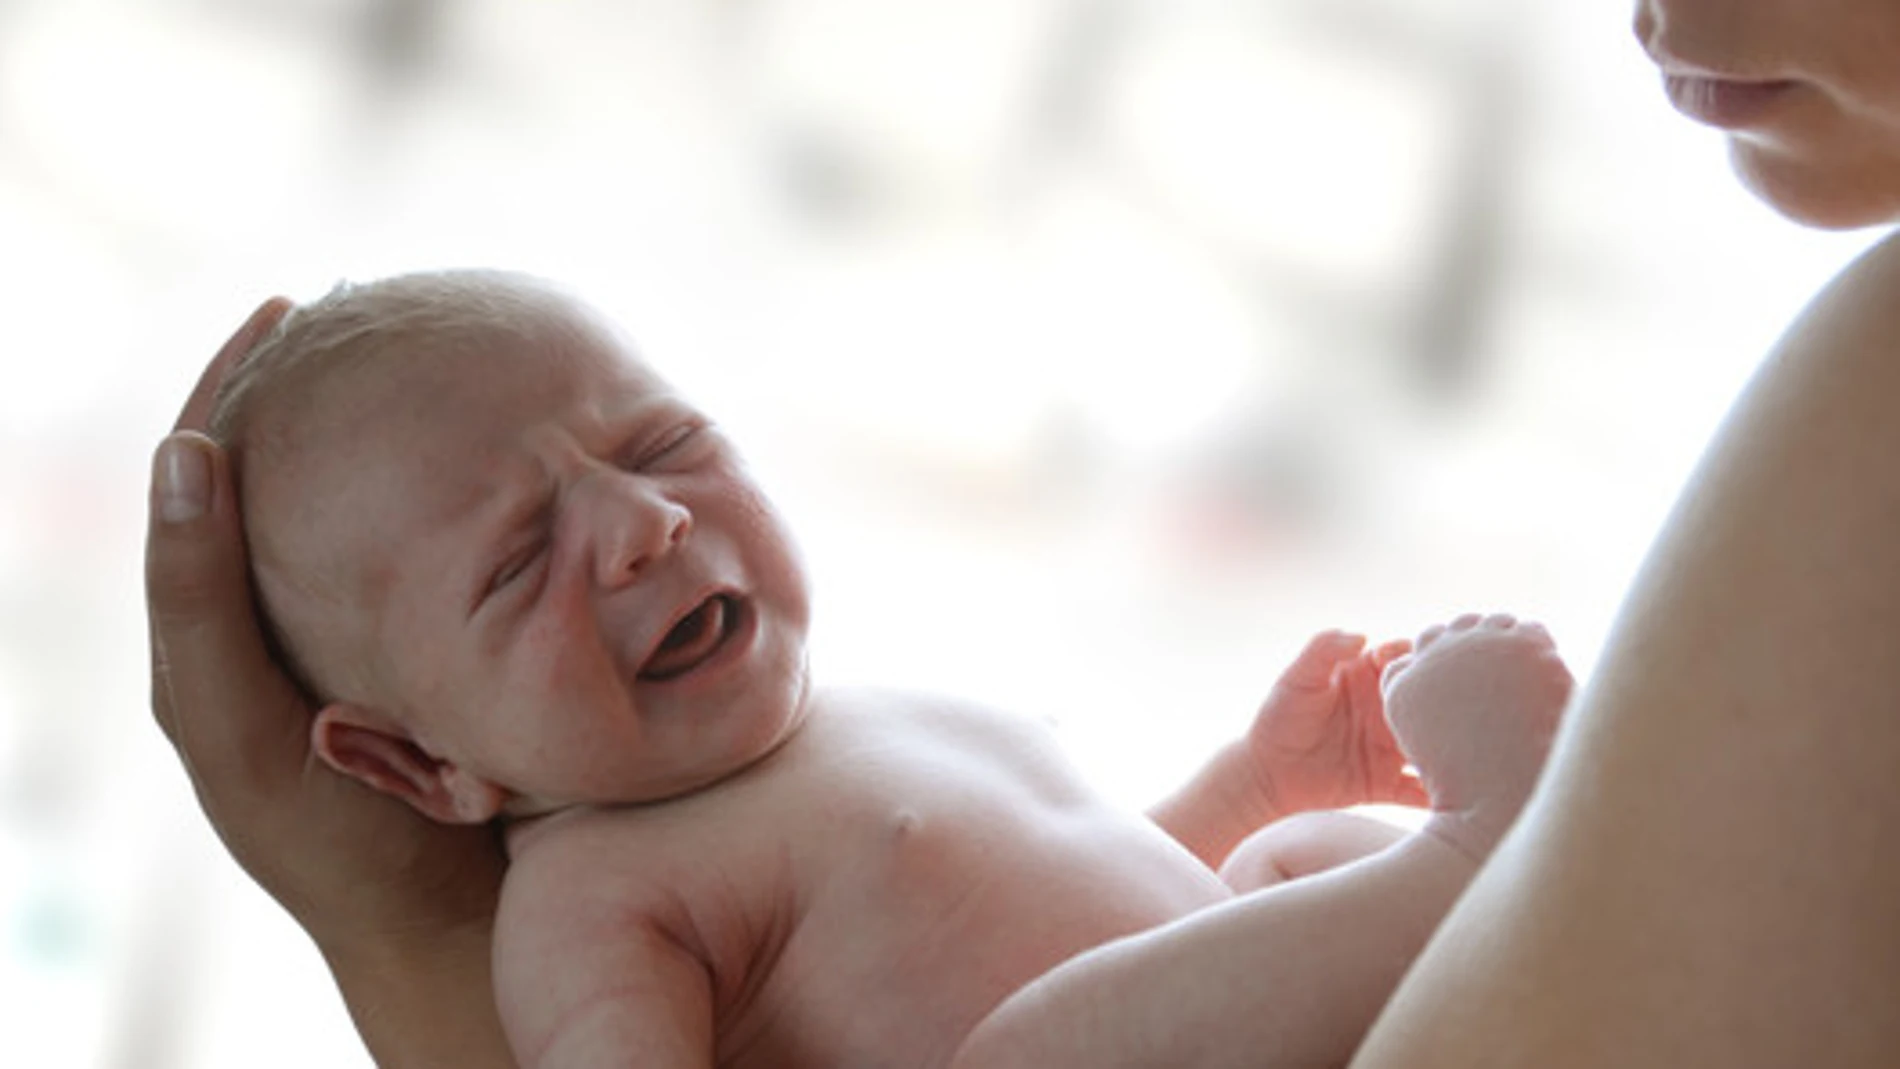 Los investigadoers de NYU Langone Medical Center han descubierto que la oxitocina enseña al cerebro de la madre a responder a las necesidades del recién nacido